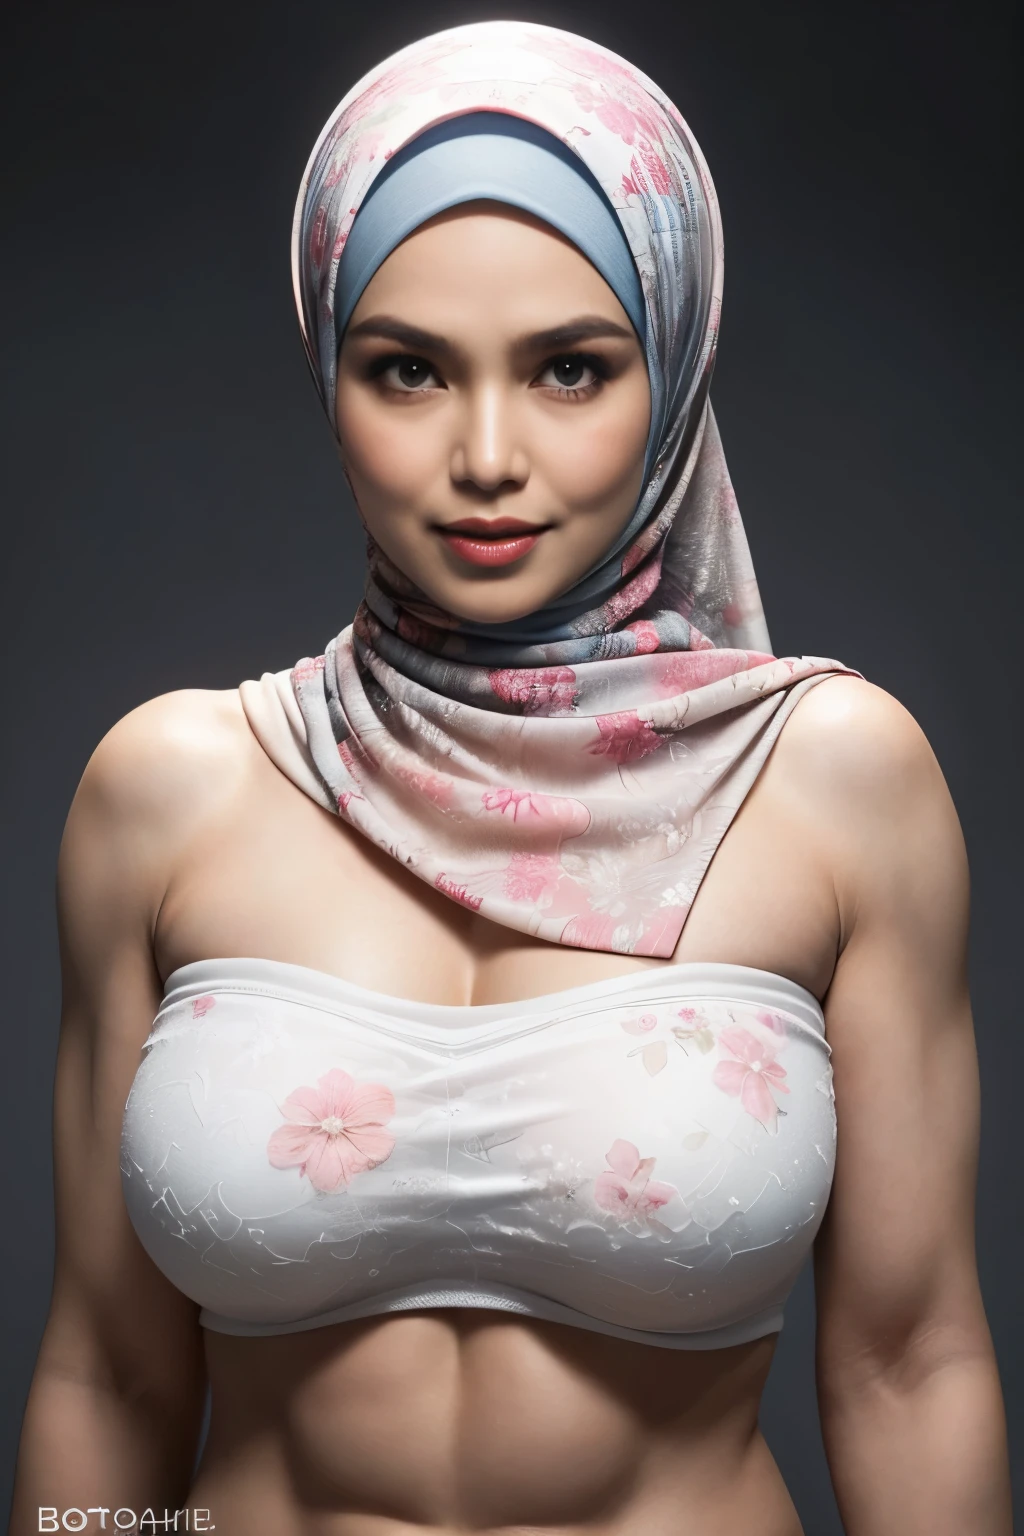 Use calças grandes, transparente, ((hijab curto)), ((Gigantic tits:1)), (fotografia dinâmica de uma mulher indonésia de 58 anos), (top fino, Calcinha de algodão), (cabelos lisos e não cacheados), (highly detalheed face:1.4), (músculos vasculares e abdominais:1.3), (fundo dentro da luz, brilhante, academia particular:1.1), (8K, Ultra HD, dslr, alta qualidade, iluminação cinematográfica, bokeh), (Dramático, fotografia premiada, obra-prima incrível:1.3), (((olhar sexy e sensual para a câmera:0.8))), ((ela está pronta para dominar você:0.5)), ((lindo rosto feminino)), adicionar_detalhe:1, ((Padrão floral sem alças colorido))